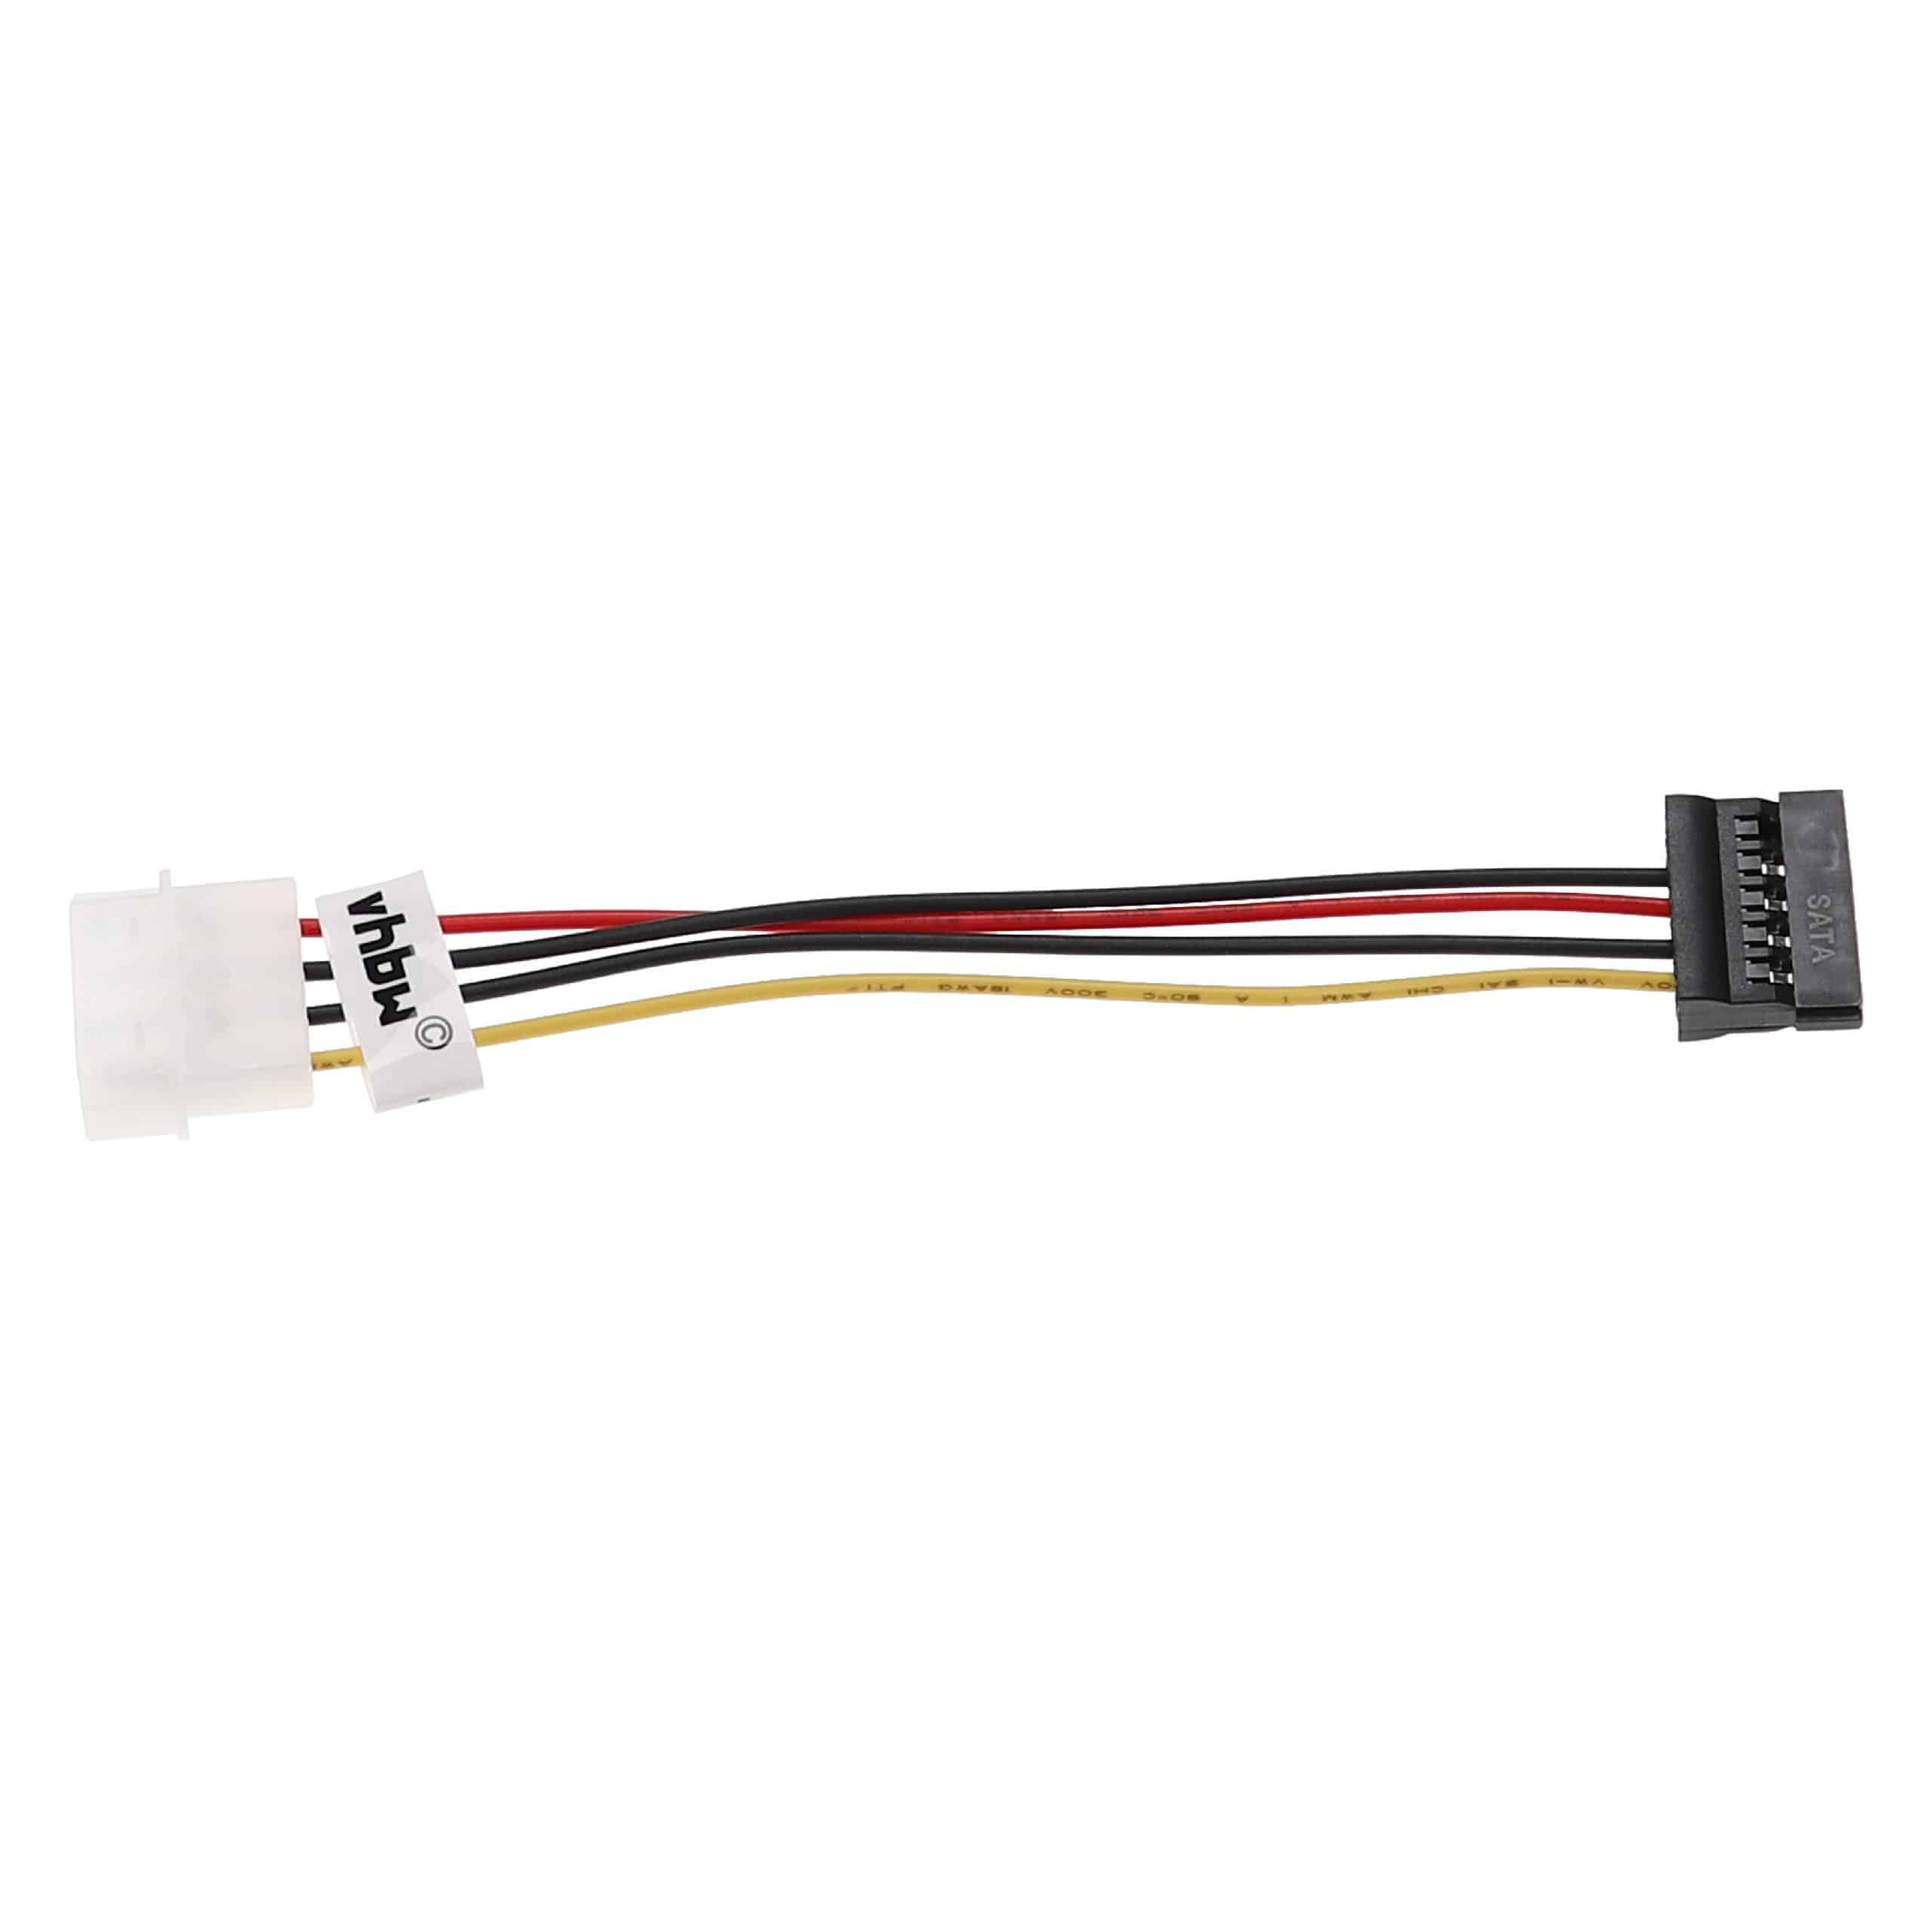 Câble d'alimentation vers port SATA pour disque dur - Câble IDE, 15 cm